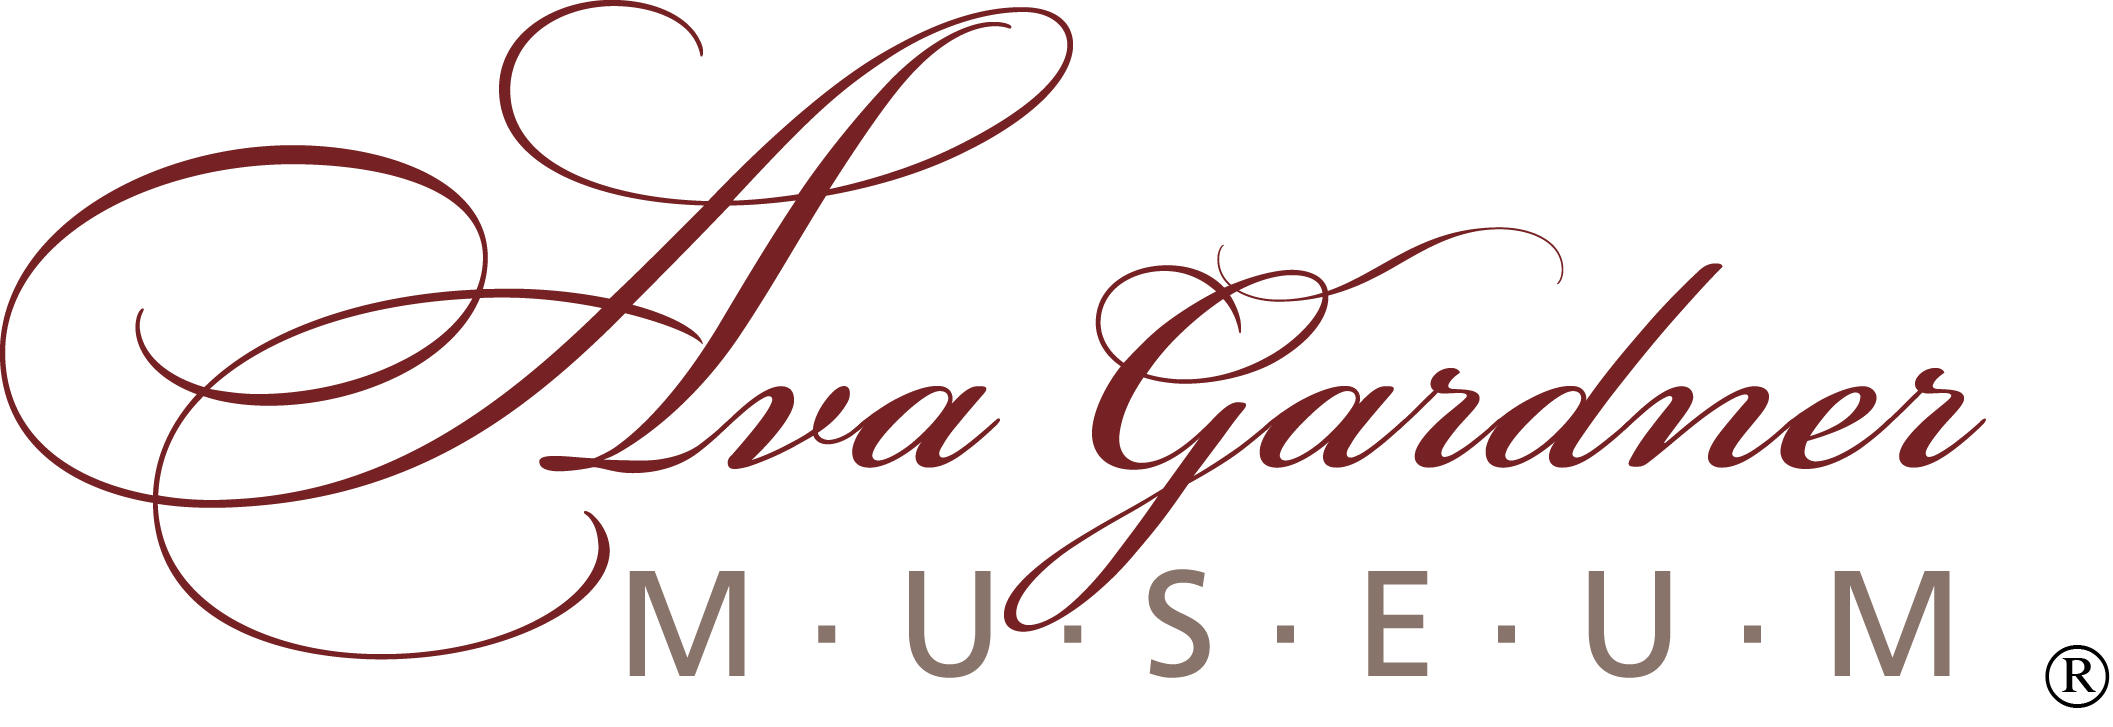 Logo for the Ava Gardner Museum in Smithfield, NC.